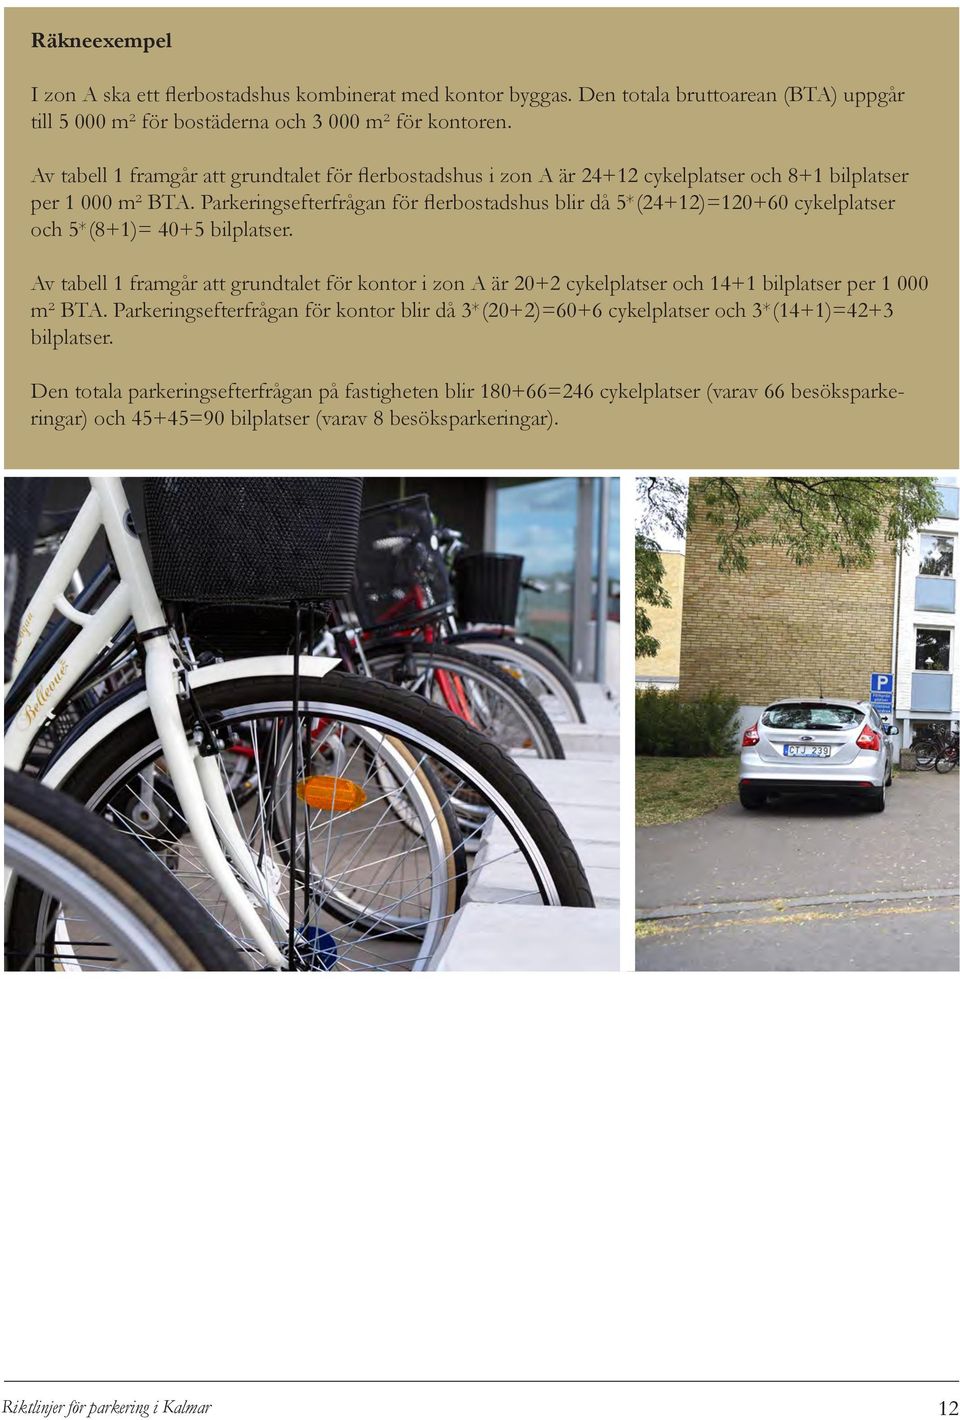 Parkeringsefterfrågan för flerbostadshus blir då 5*(24+12)=120+60 cykelplatser och 5*(8+1)= 40+5 bilplatser.